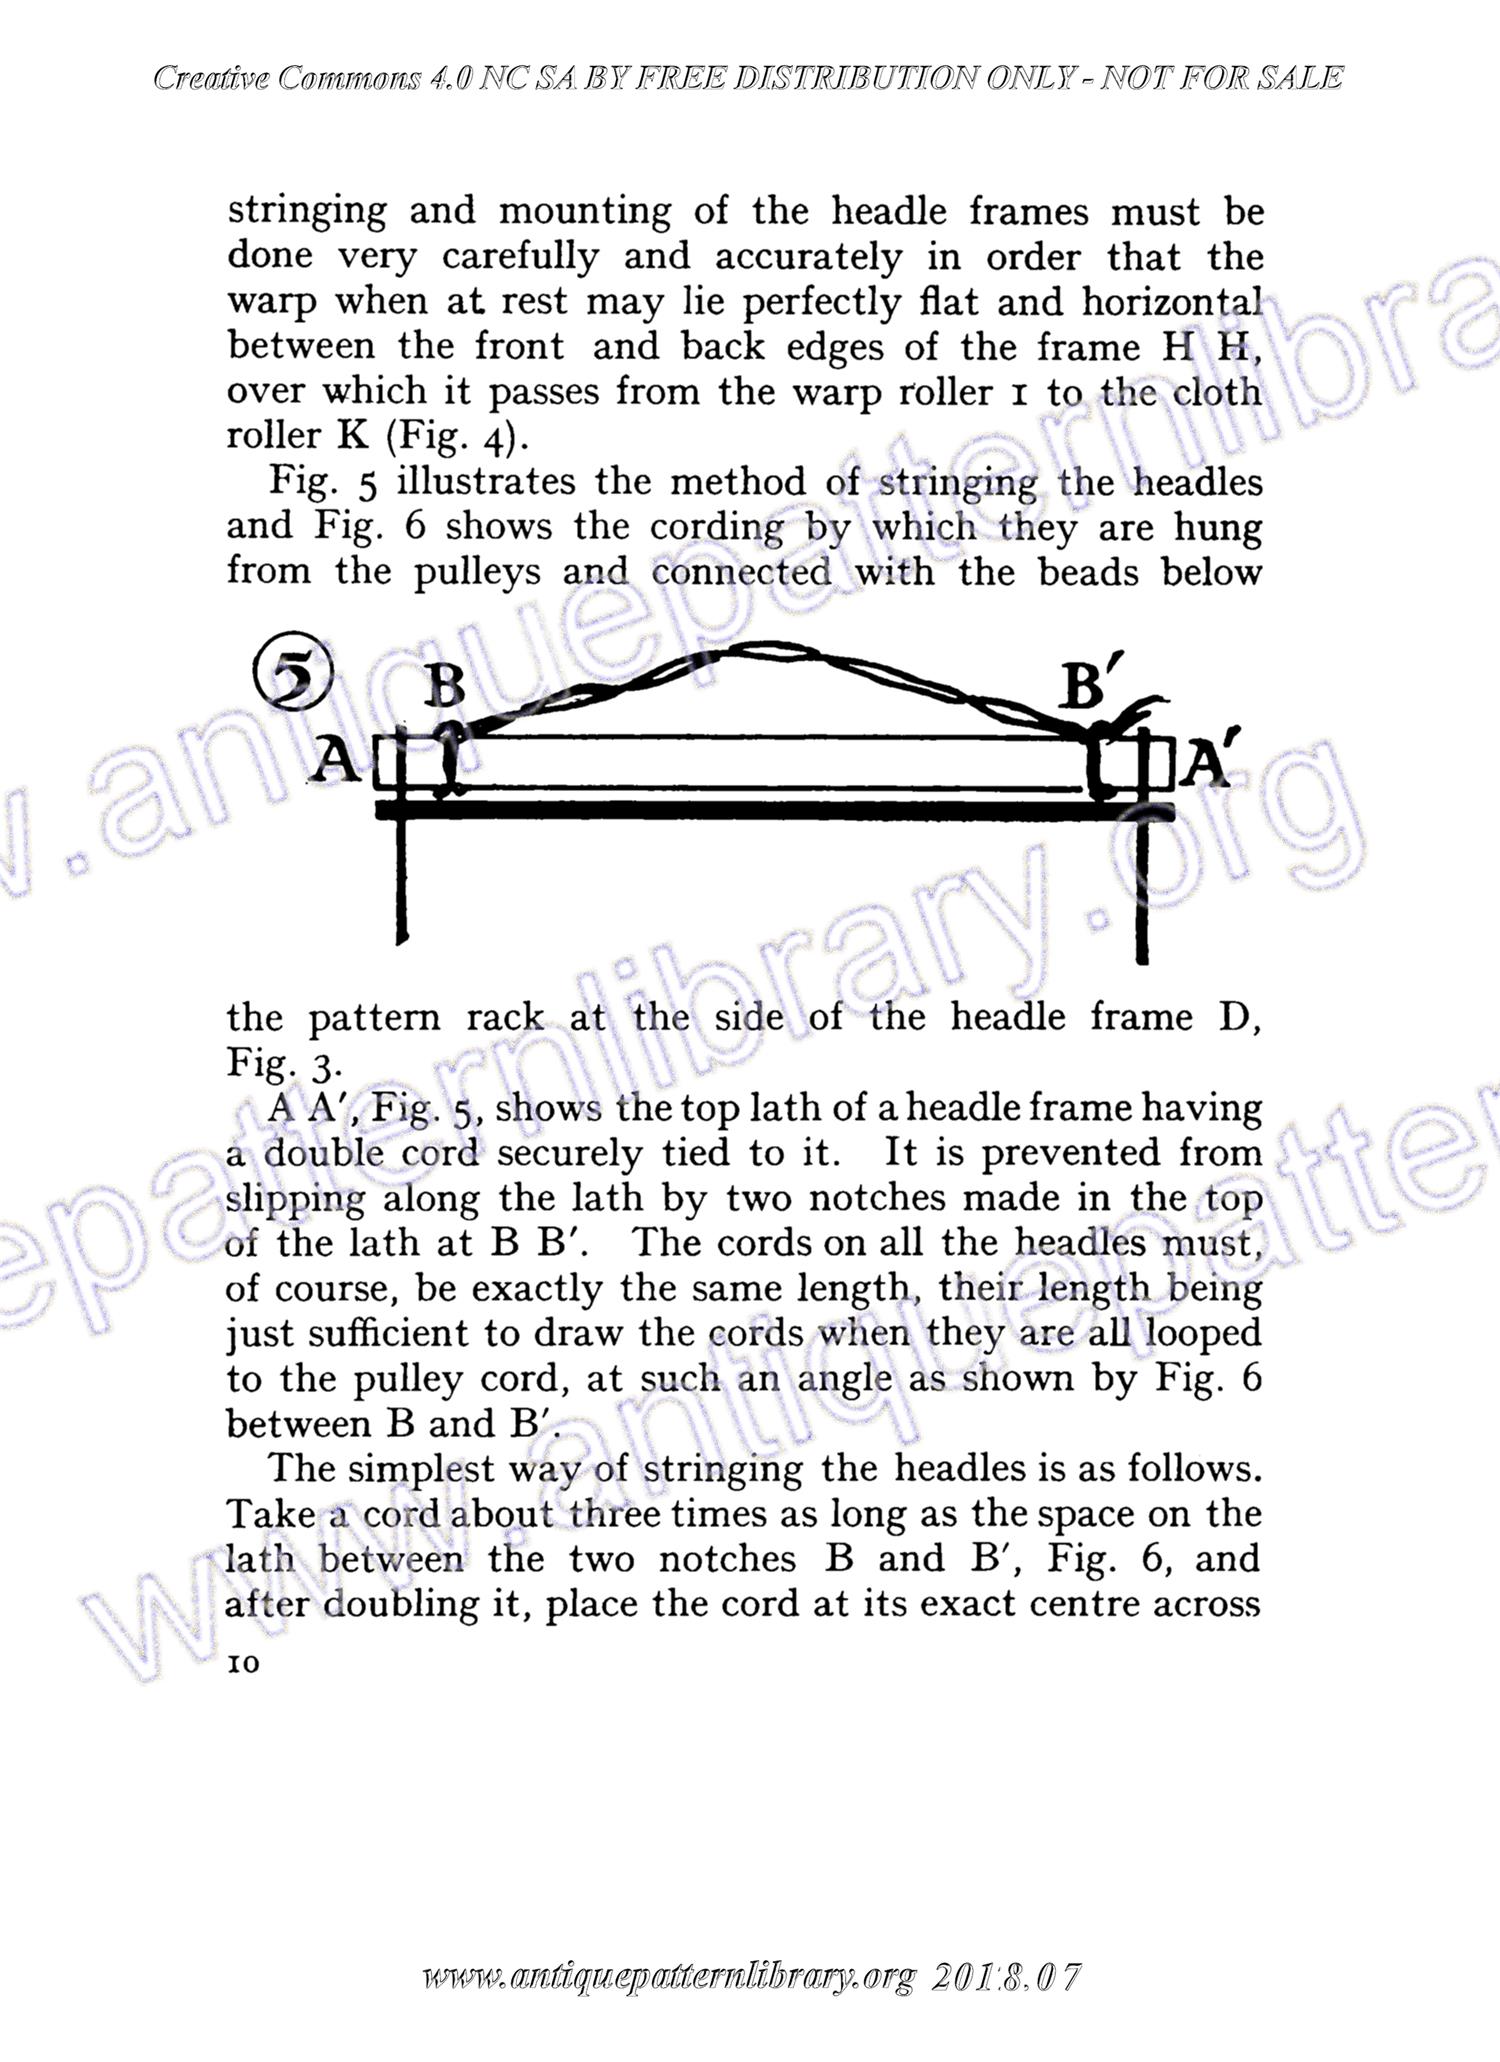 C-YS067 Book III - The Table Loom